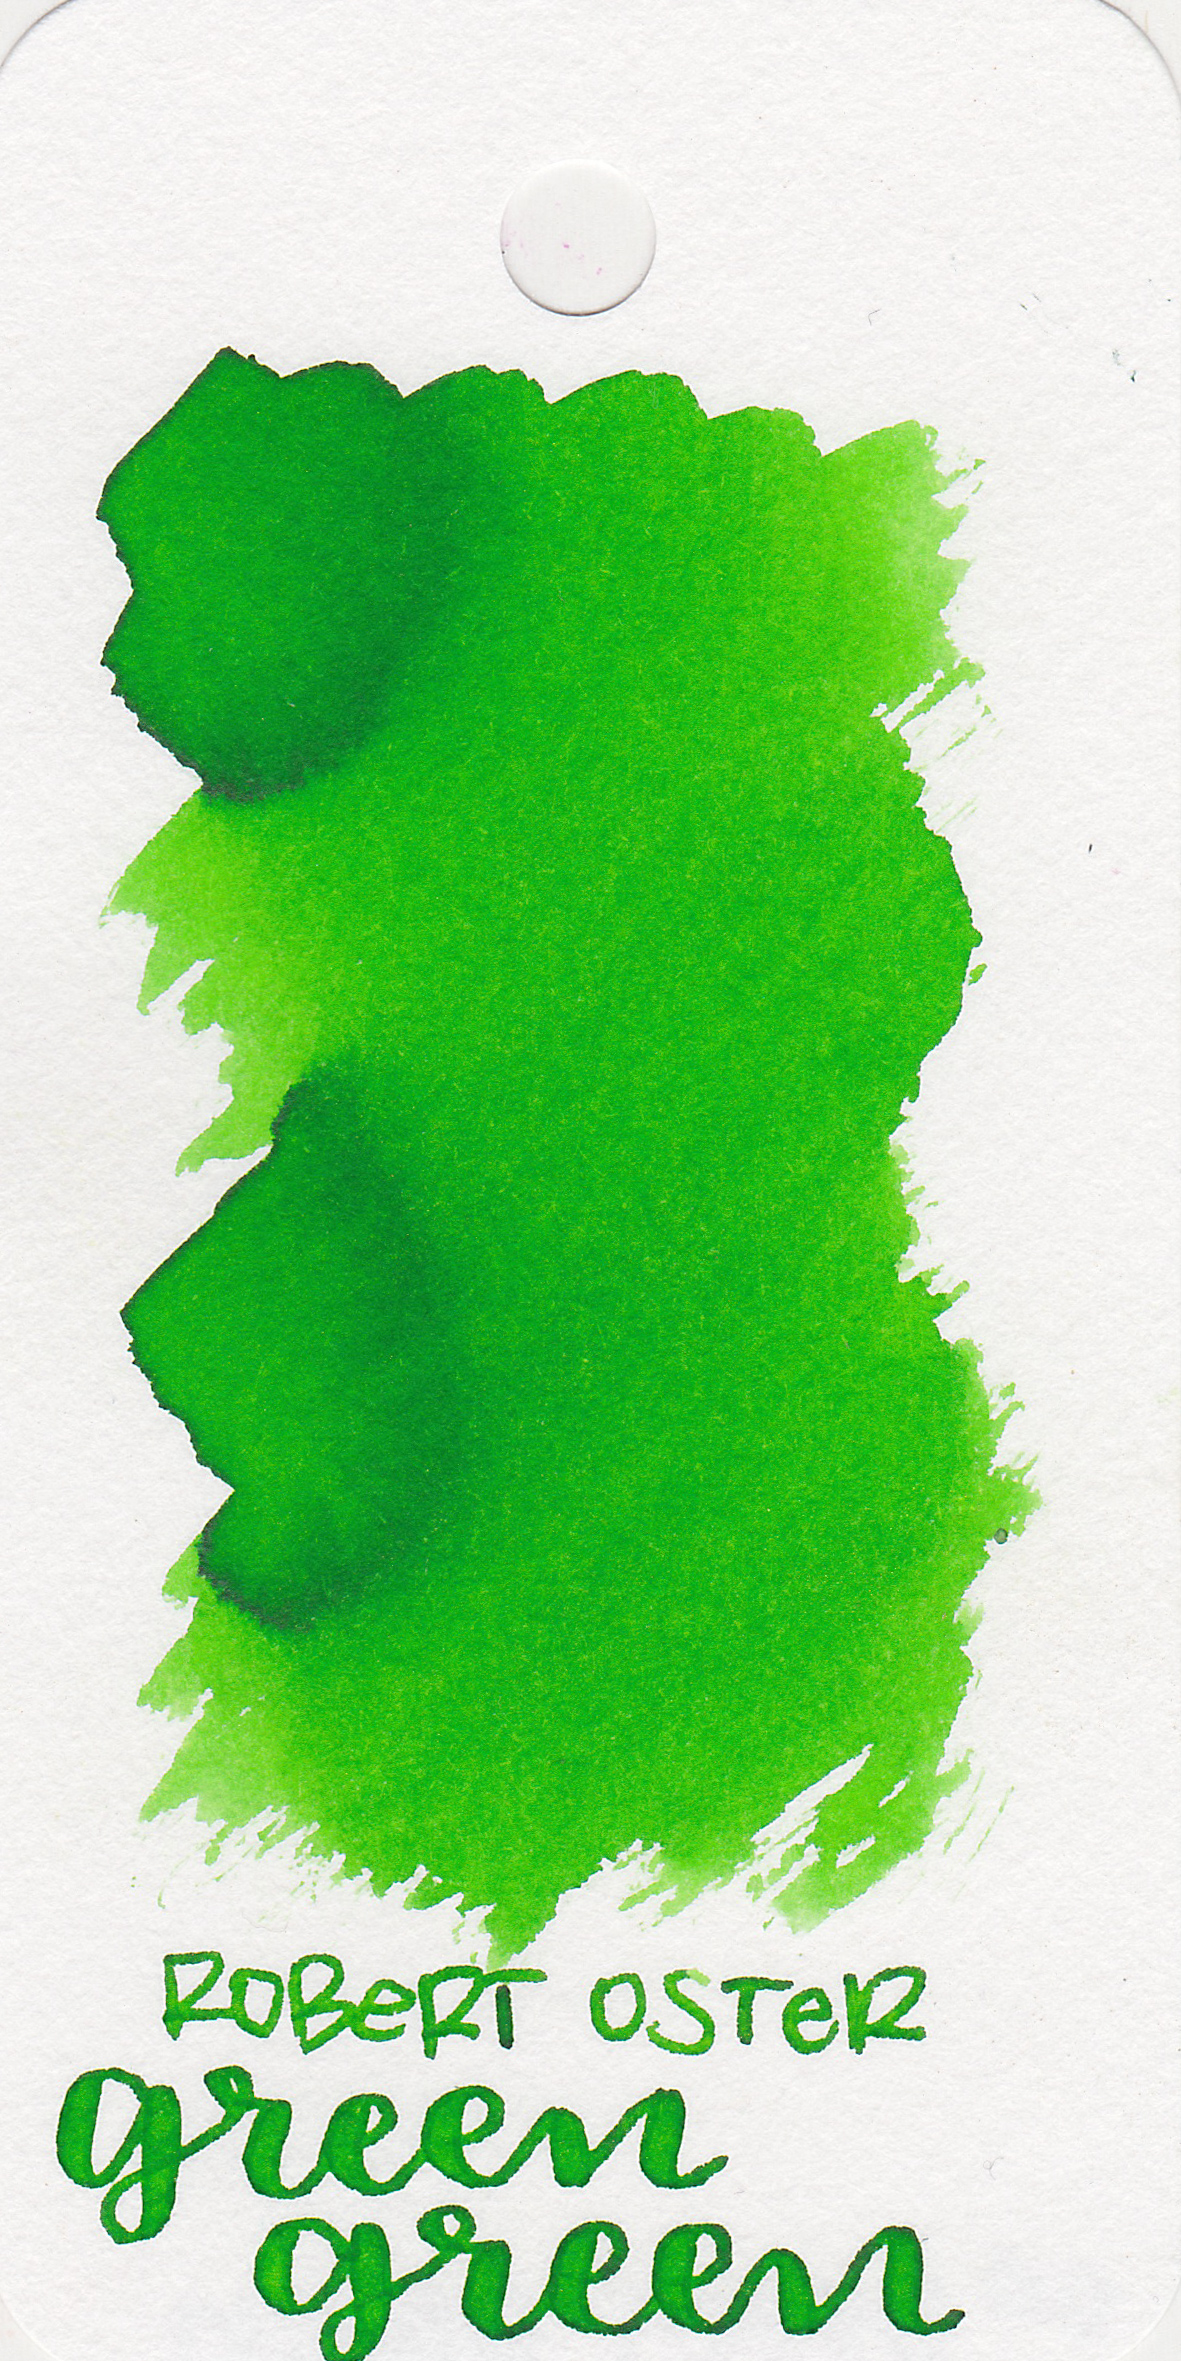 ro-green-green-1.jpg